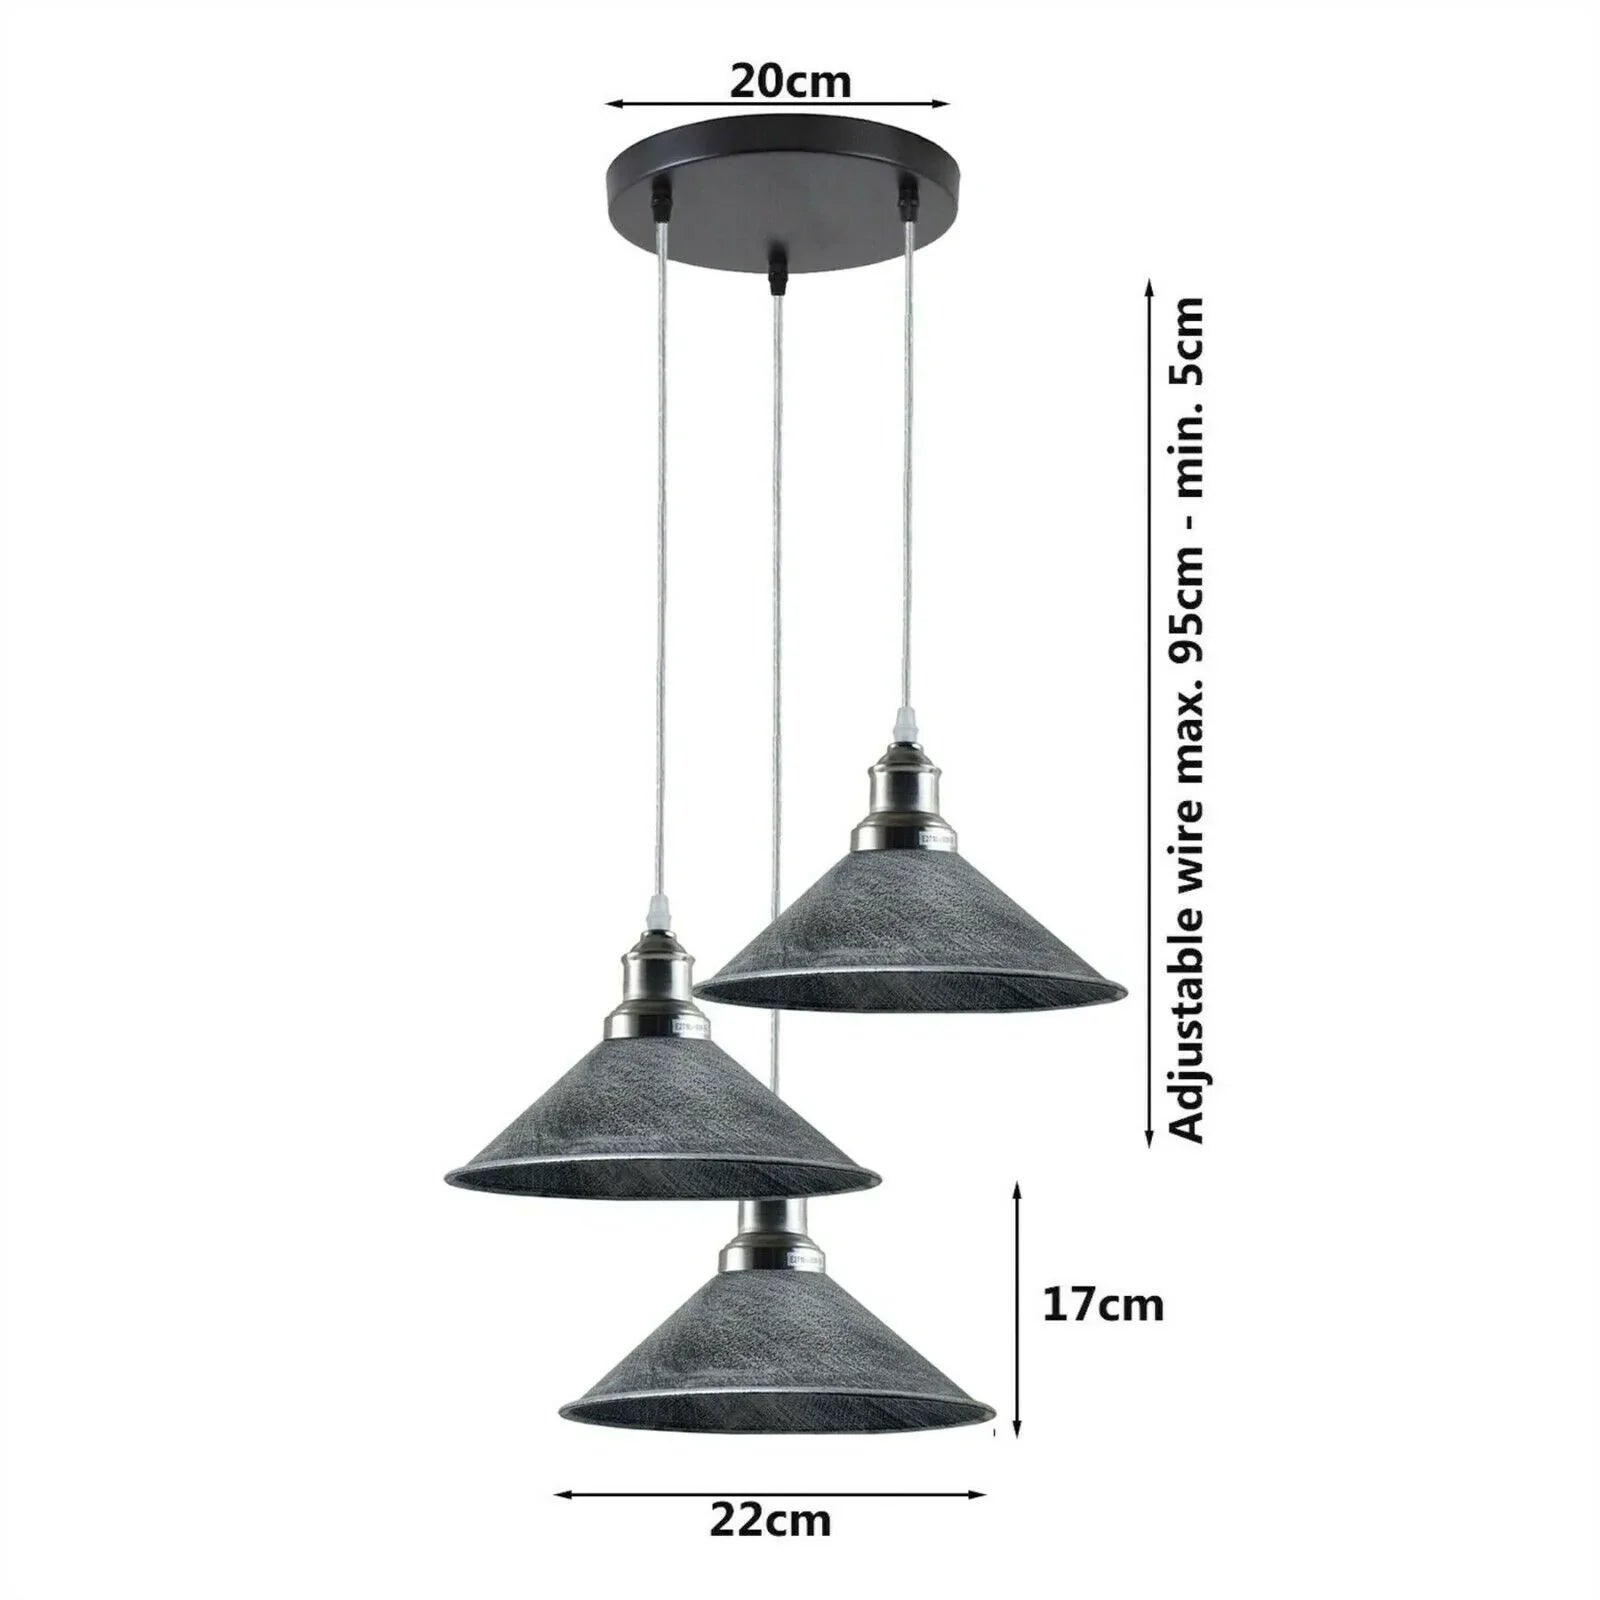 Green Brass Industrial 3-Light Hanging Pendant Light Light Fixture Cone Shade~1173